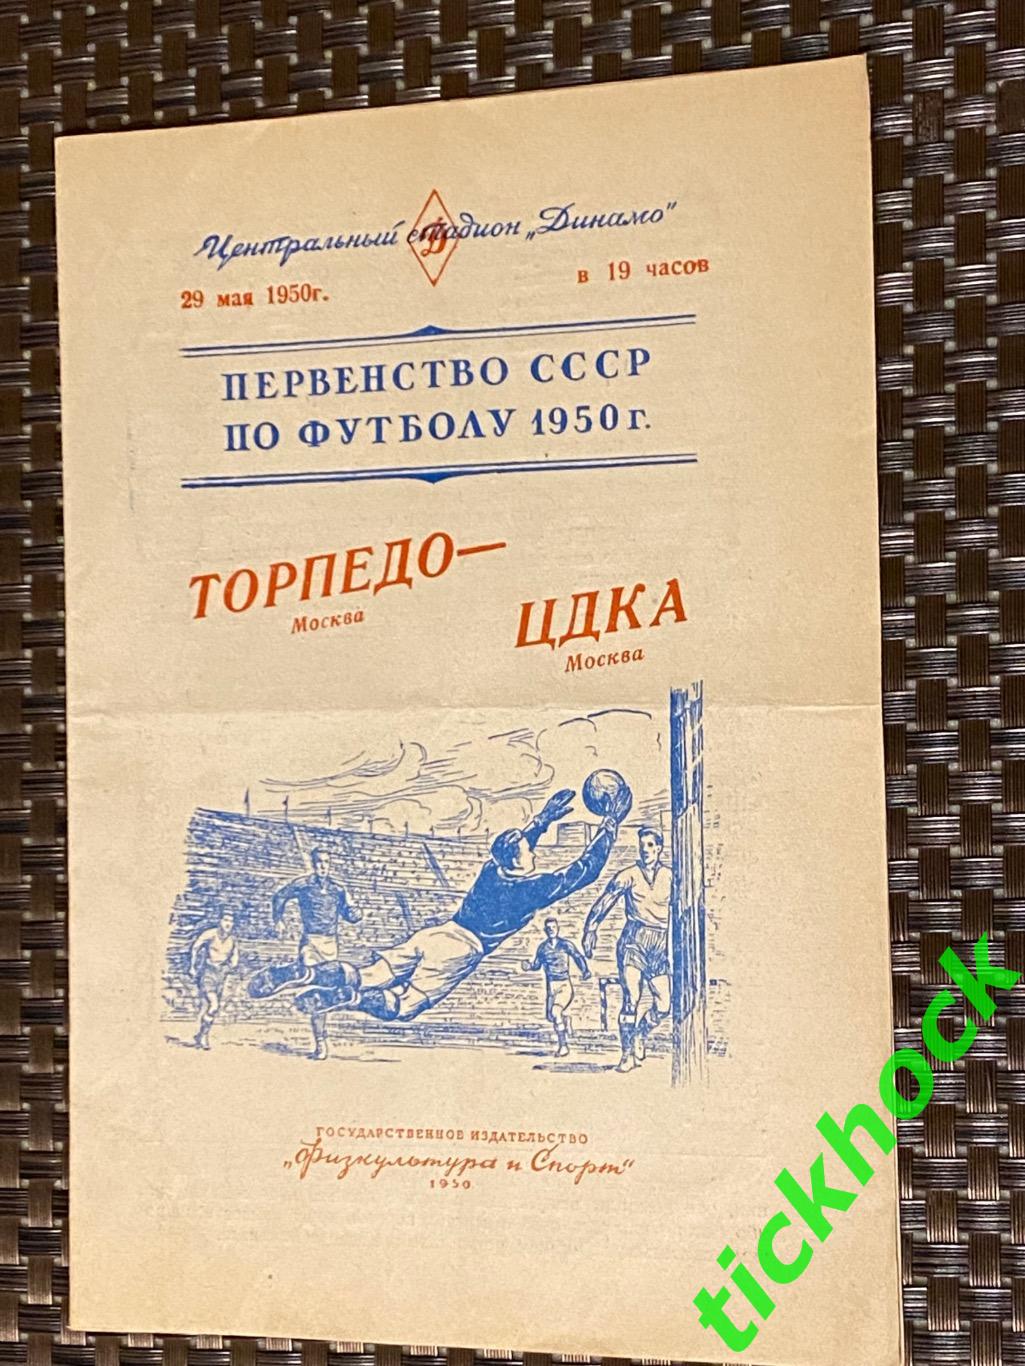 1950 Торпедо Москва - ЦДКА / ЦСКА 29.05.1950. Первенство СССР